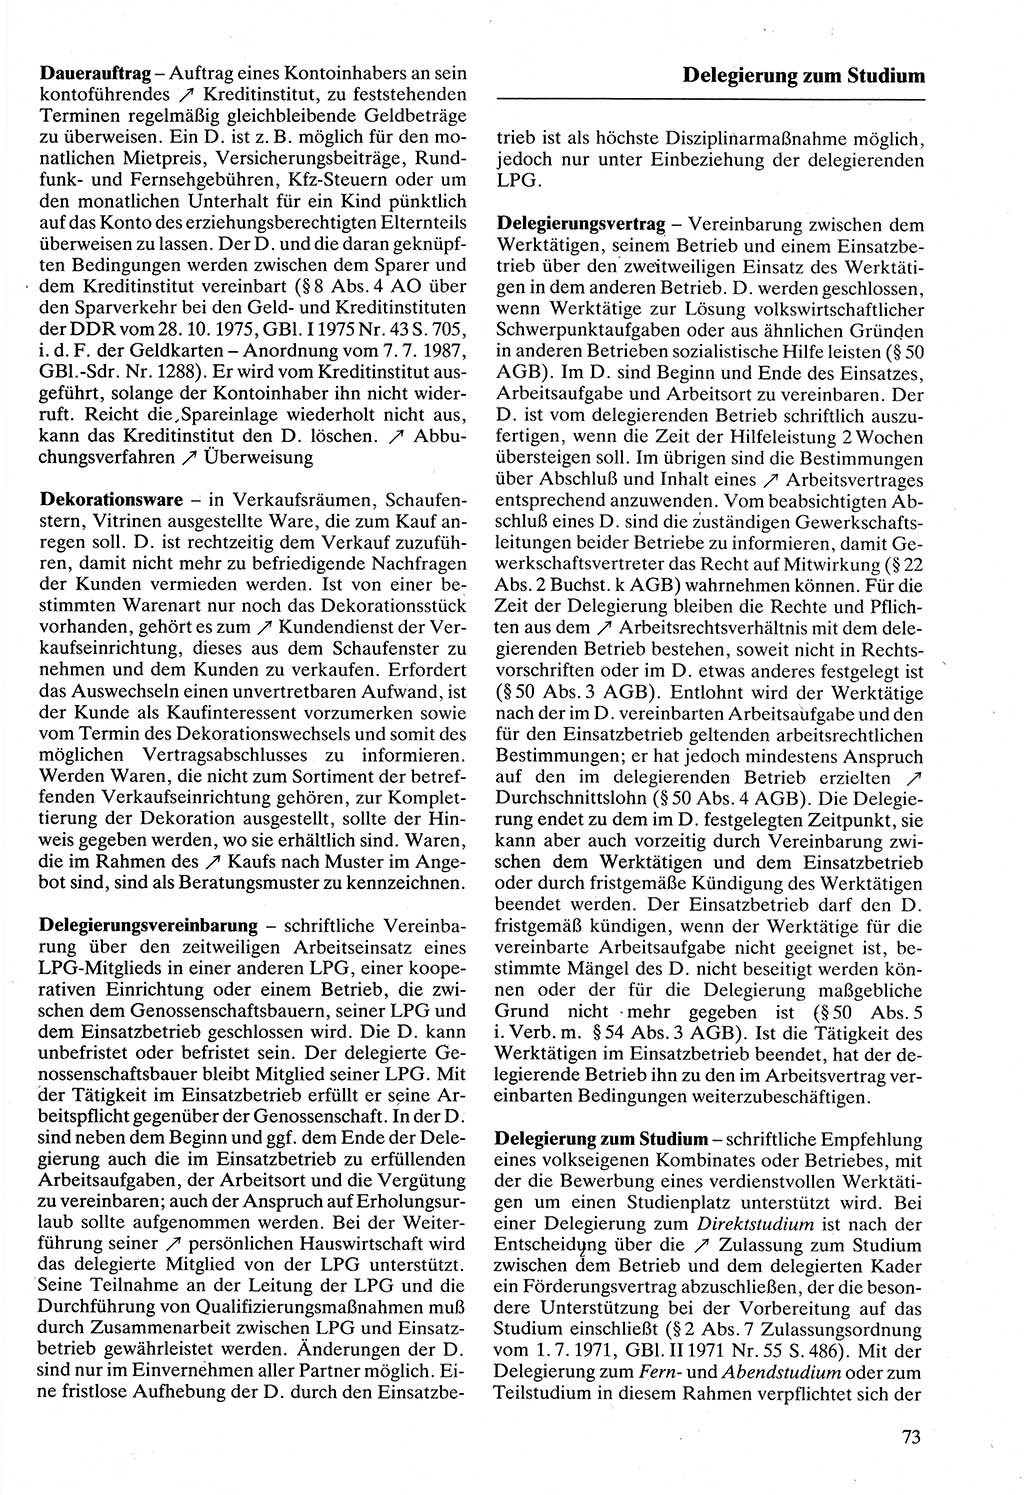 Rechtslexikon [Deutsche Demokratische Republik (DDR)] 1988, Seite 73 (Rechtslex. DDR 1988, S. 73)